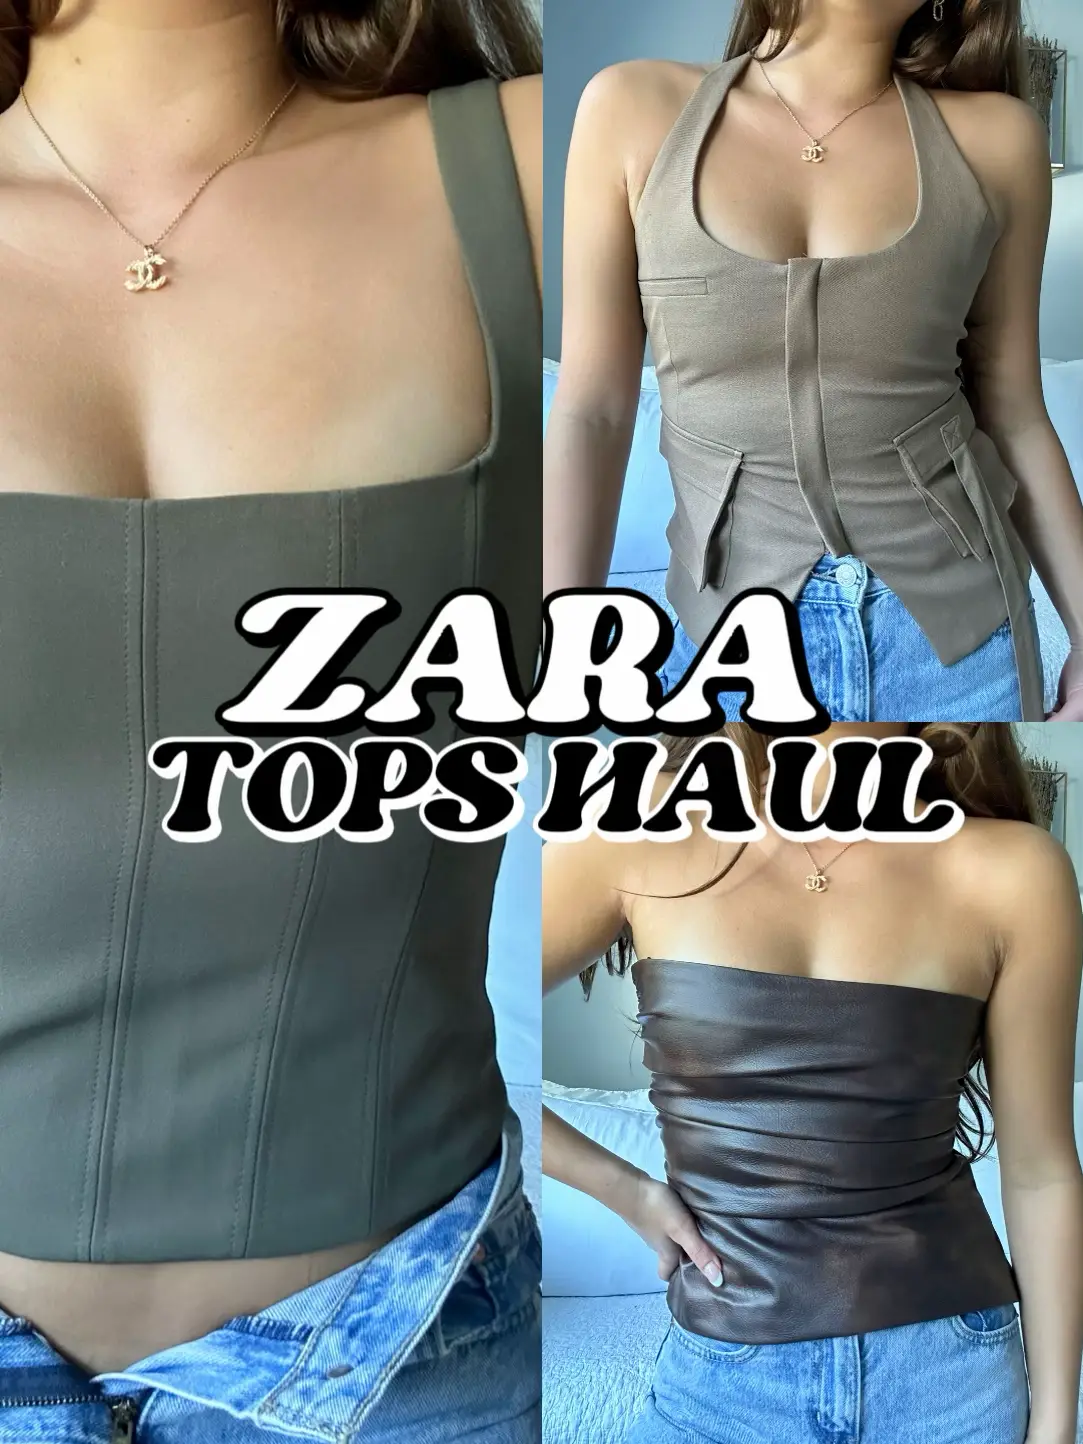 Zara top fashion - Lemon8 Search